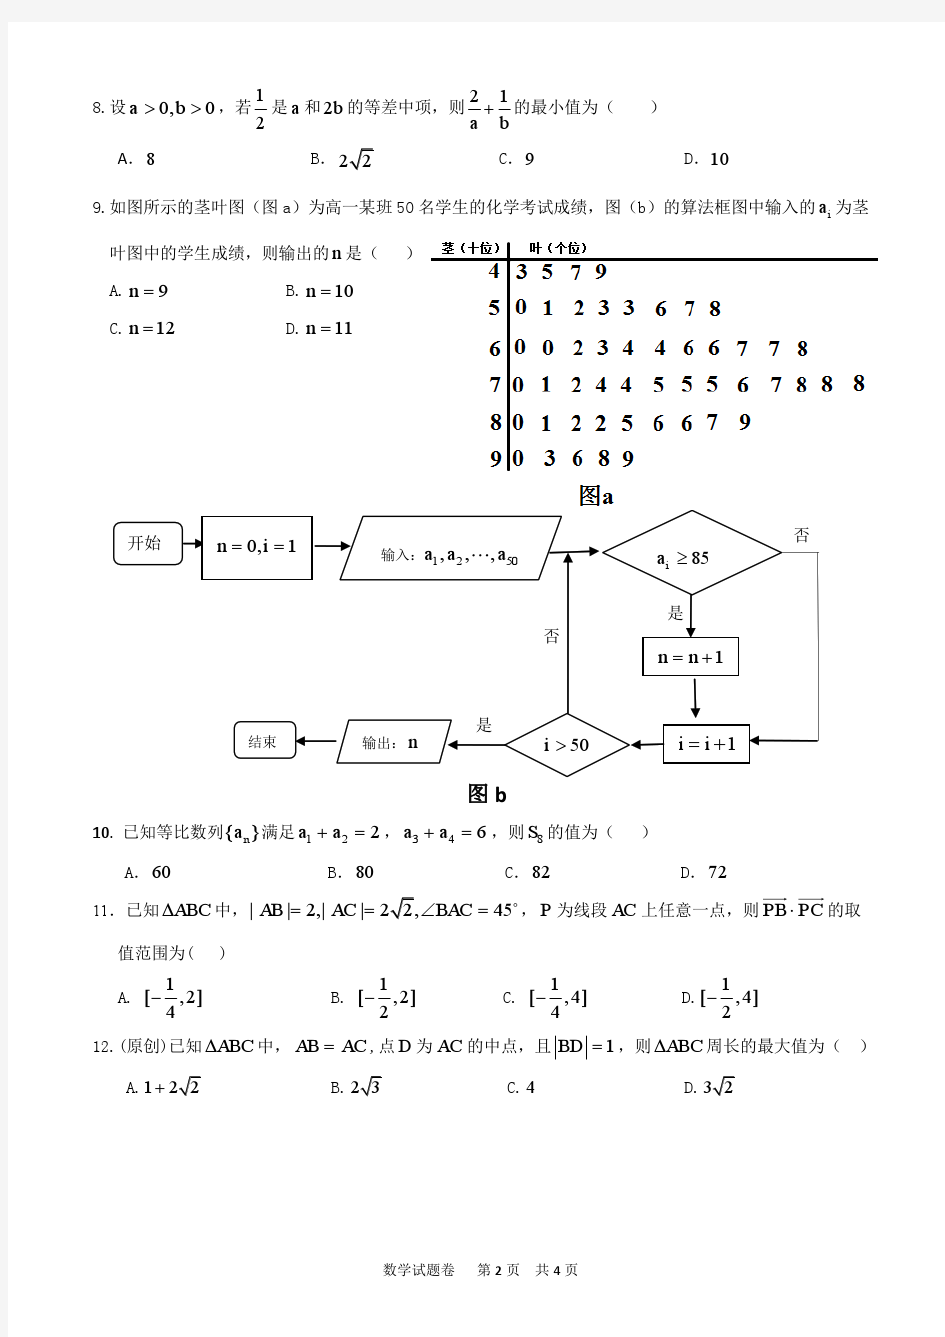 2018年重庆一中高2020级高一下期半期考试数学试卷版1